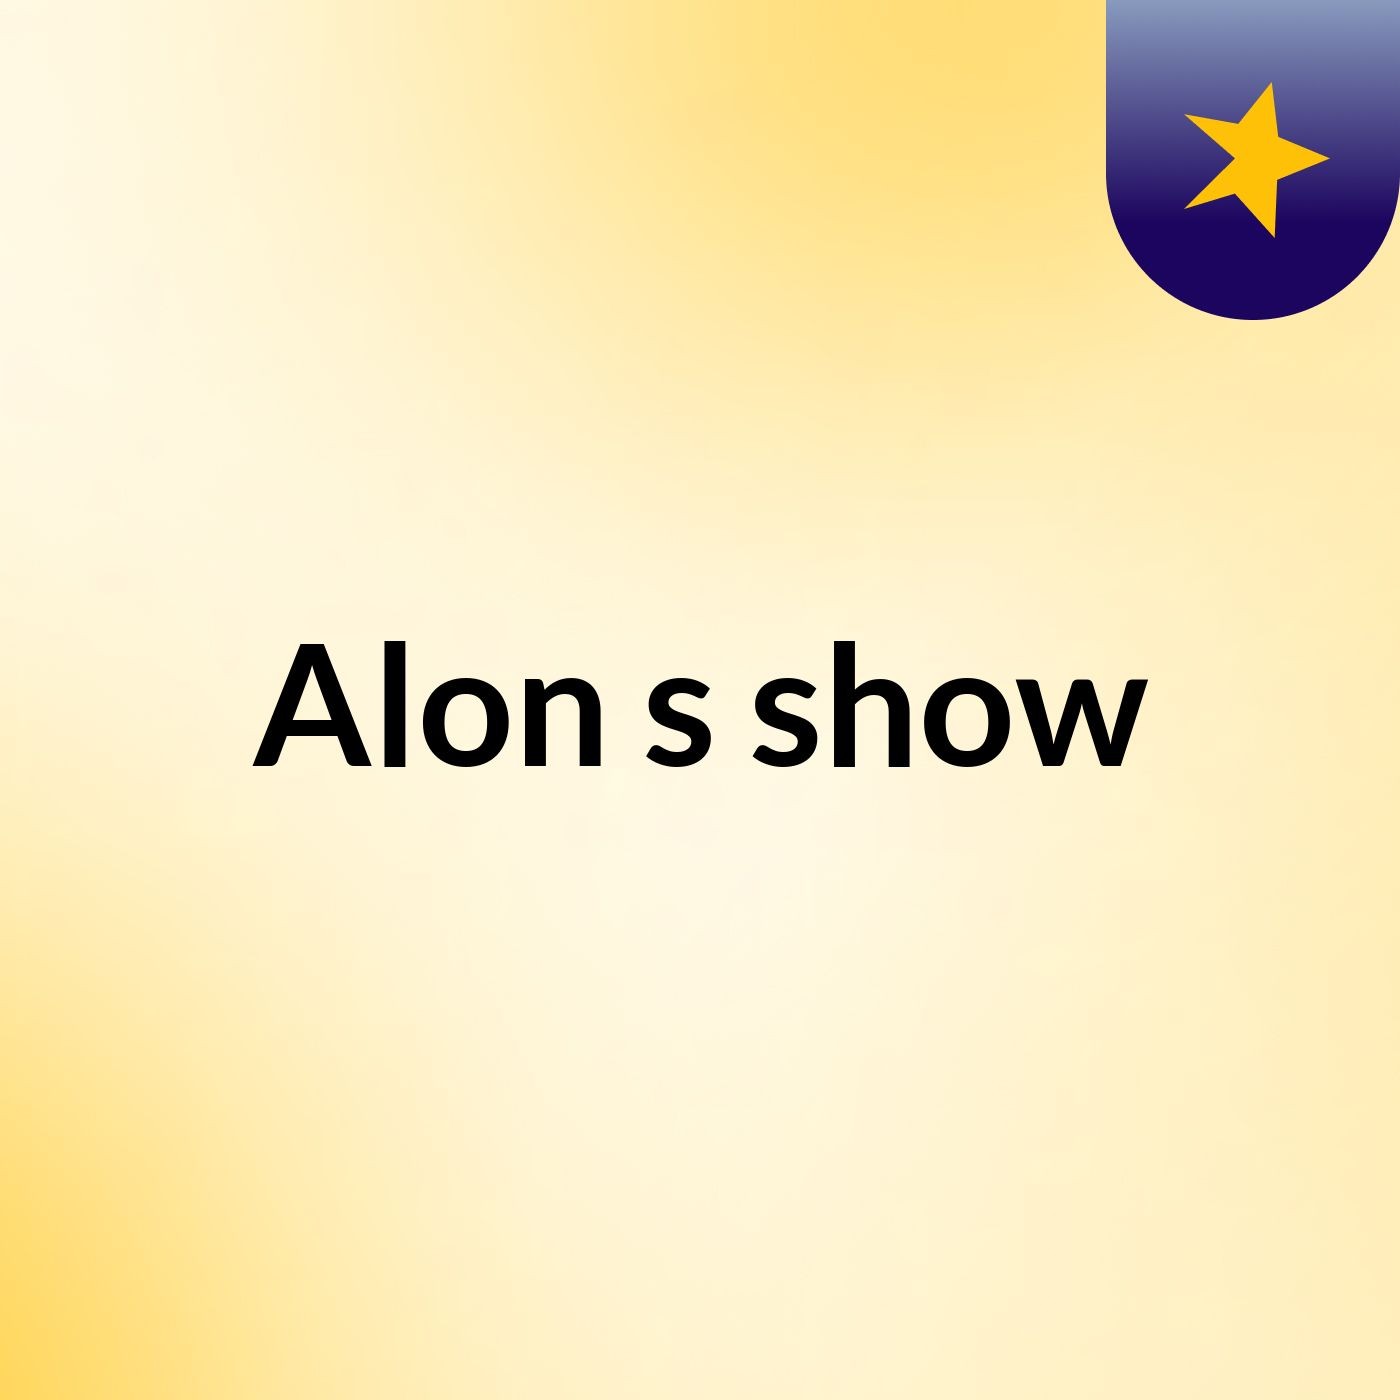 Alon's show